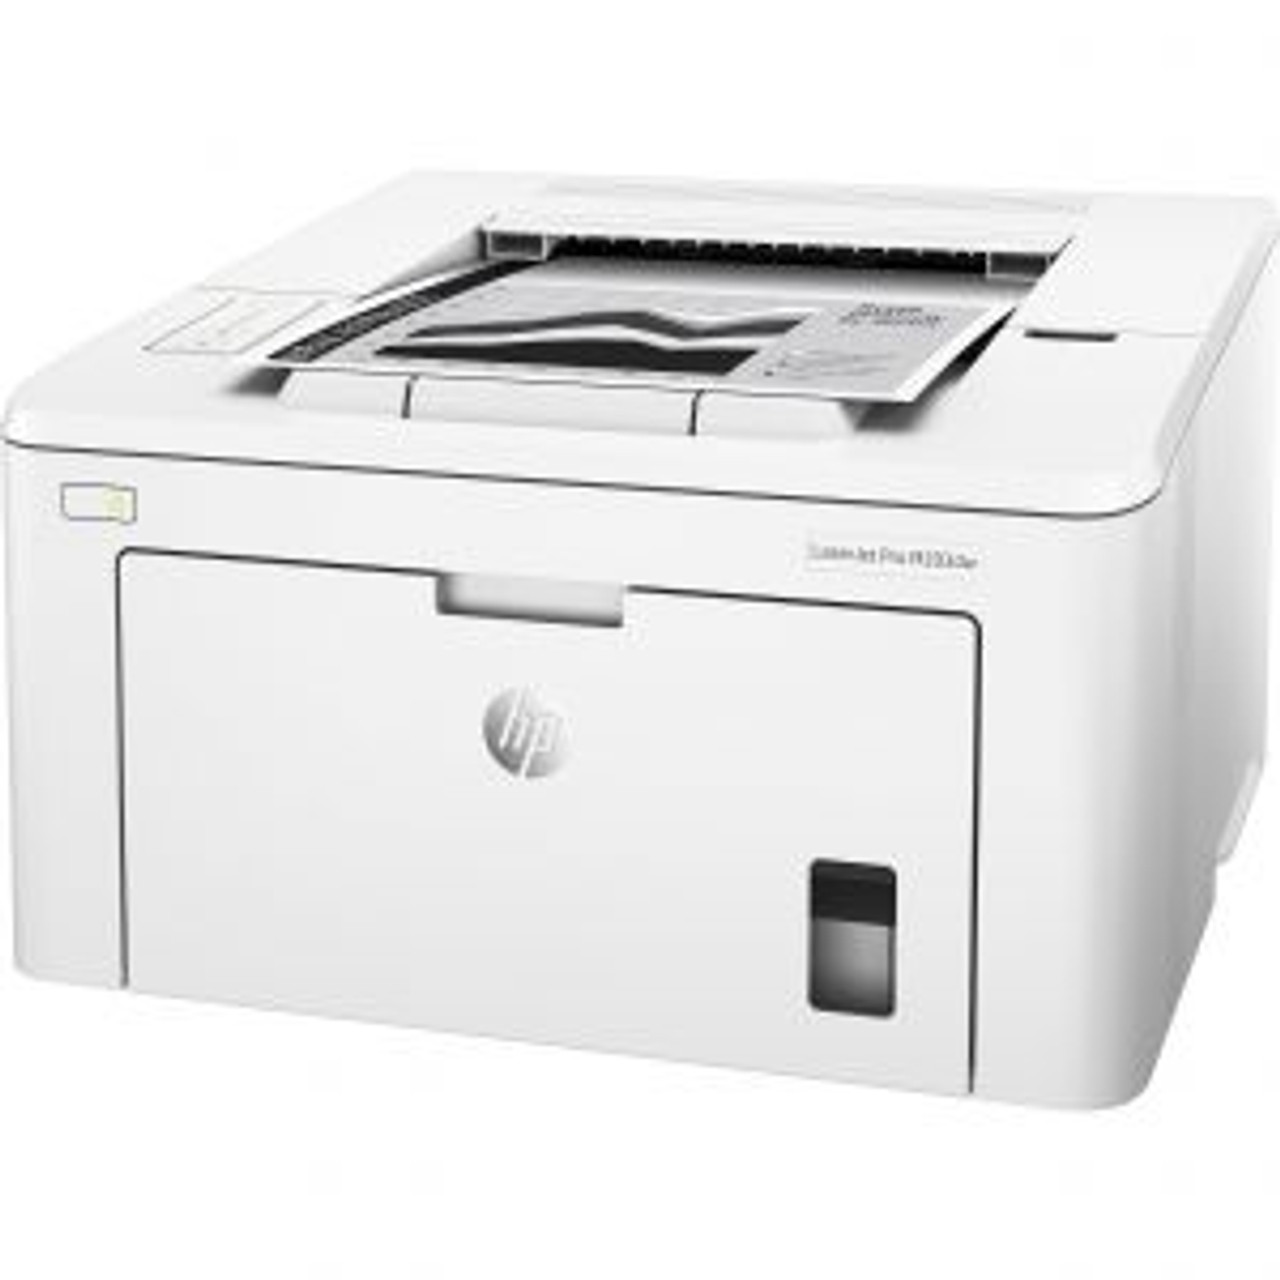 G3Q47A HP LaserJet Pro M203dw Printer